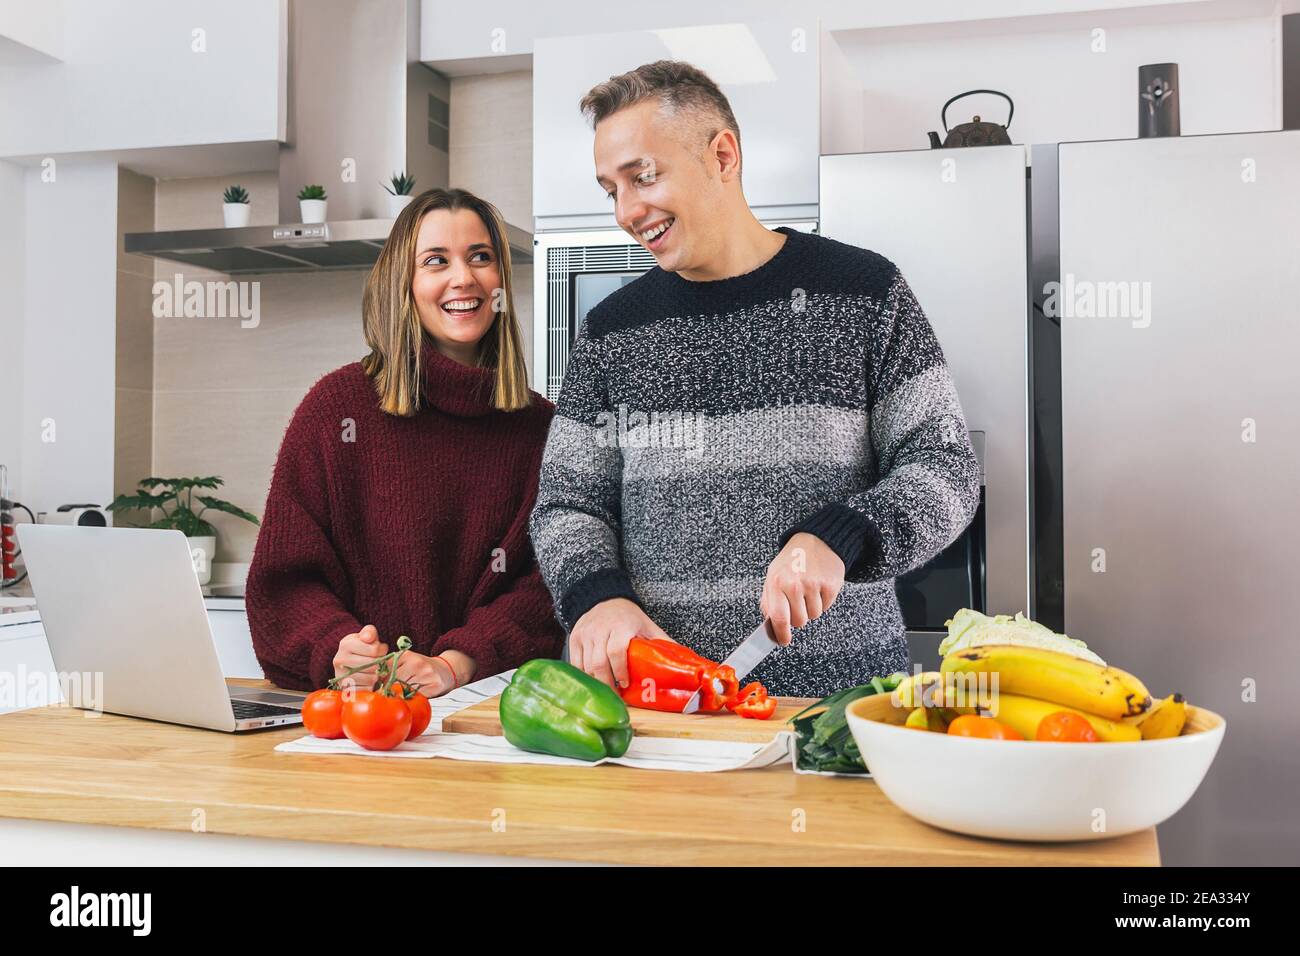 Foto de stock de una joven pareja feliz riendo y preparando comida saludable en su cocina y leyendo recetas en el cuaderno. Aprender a cocinar y disfrutar Foto de stock